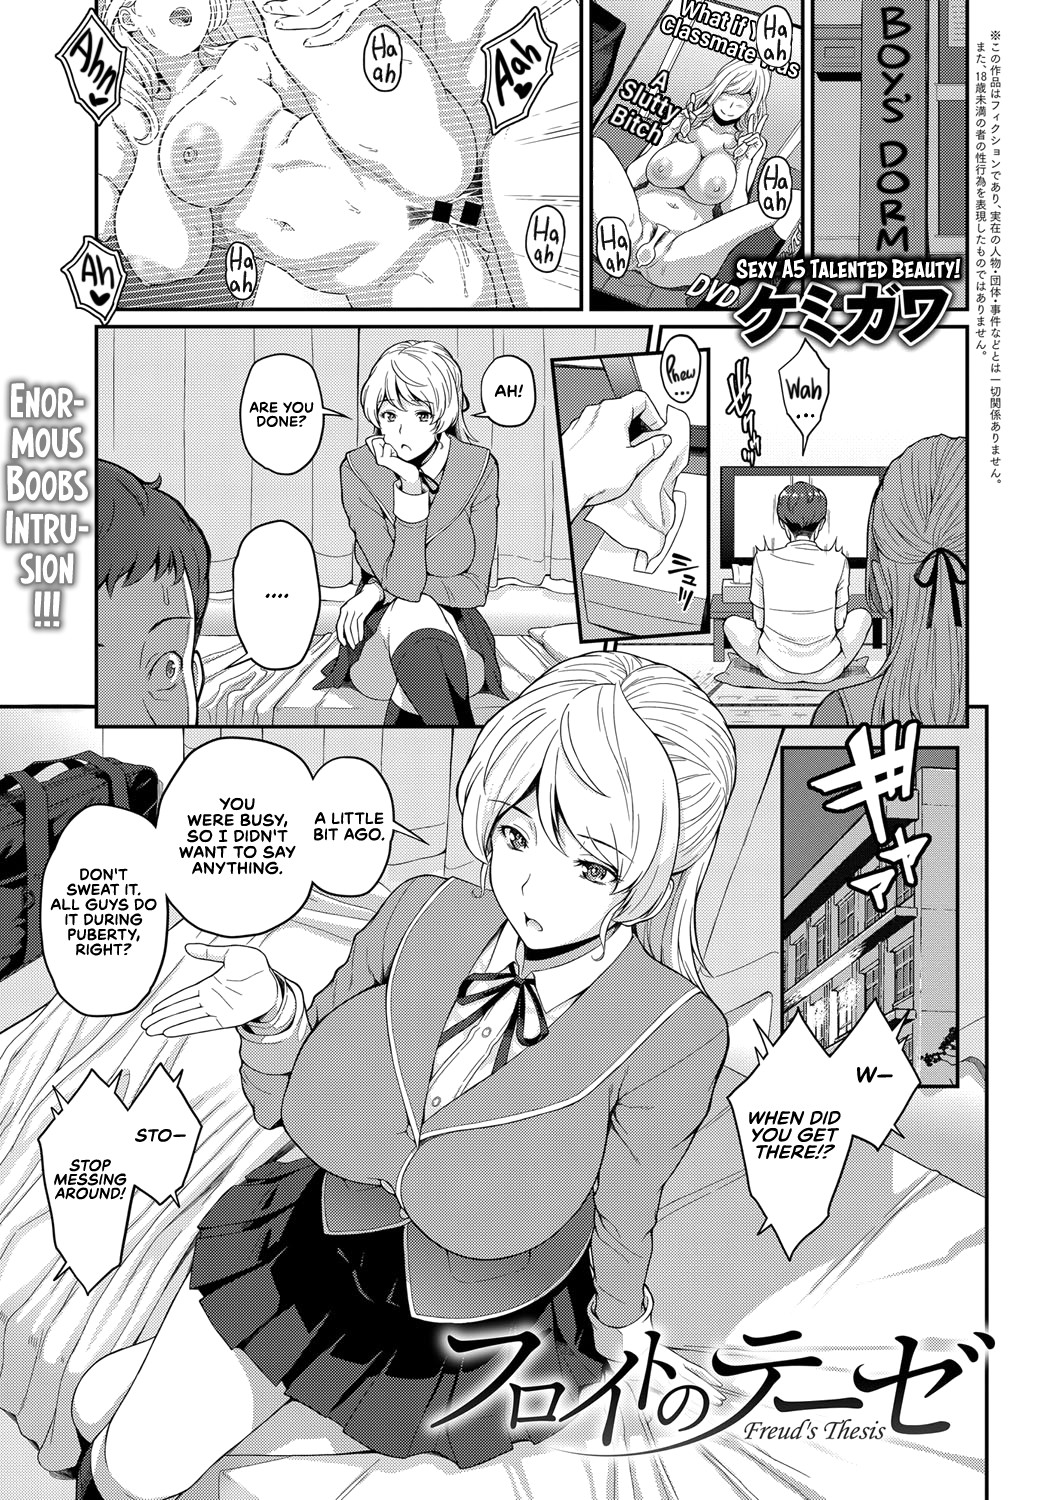 Hentai Manga Comic-Freud's Thesis-Read-1